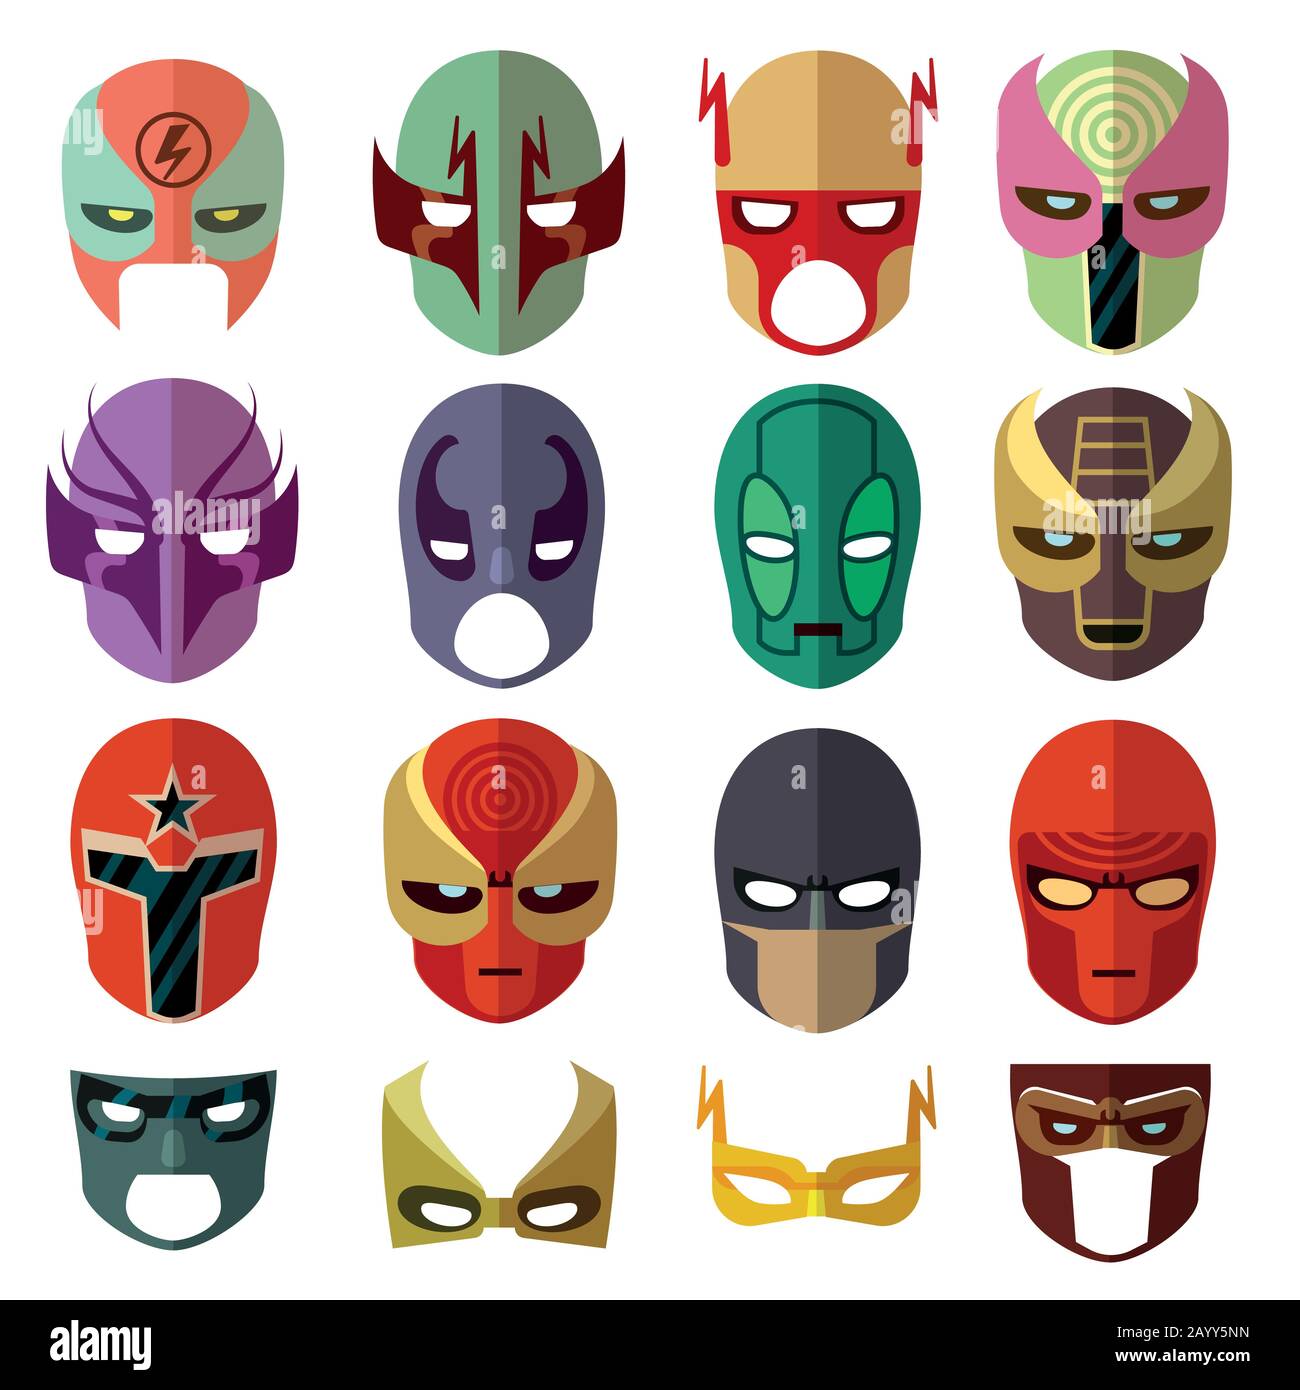 Hero-Maske-Zeichen Vektor-Ebene Symbole. Abbildung: Set mit Hero-Cartoon-Maske und Farb-Avatar-Maske Stock Vektor